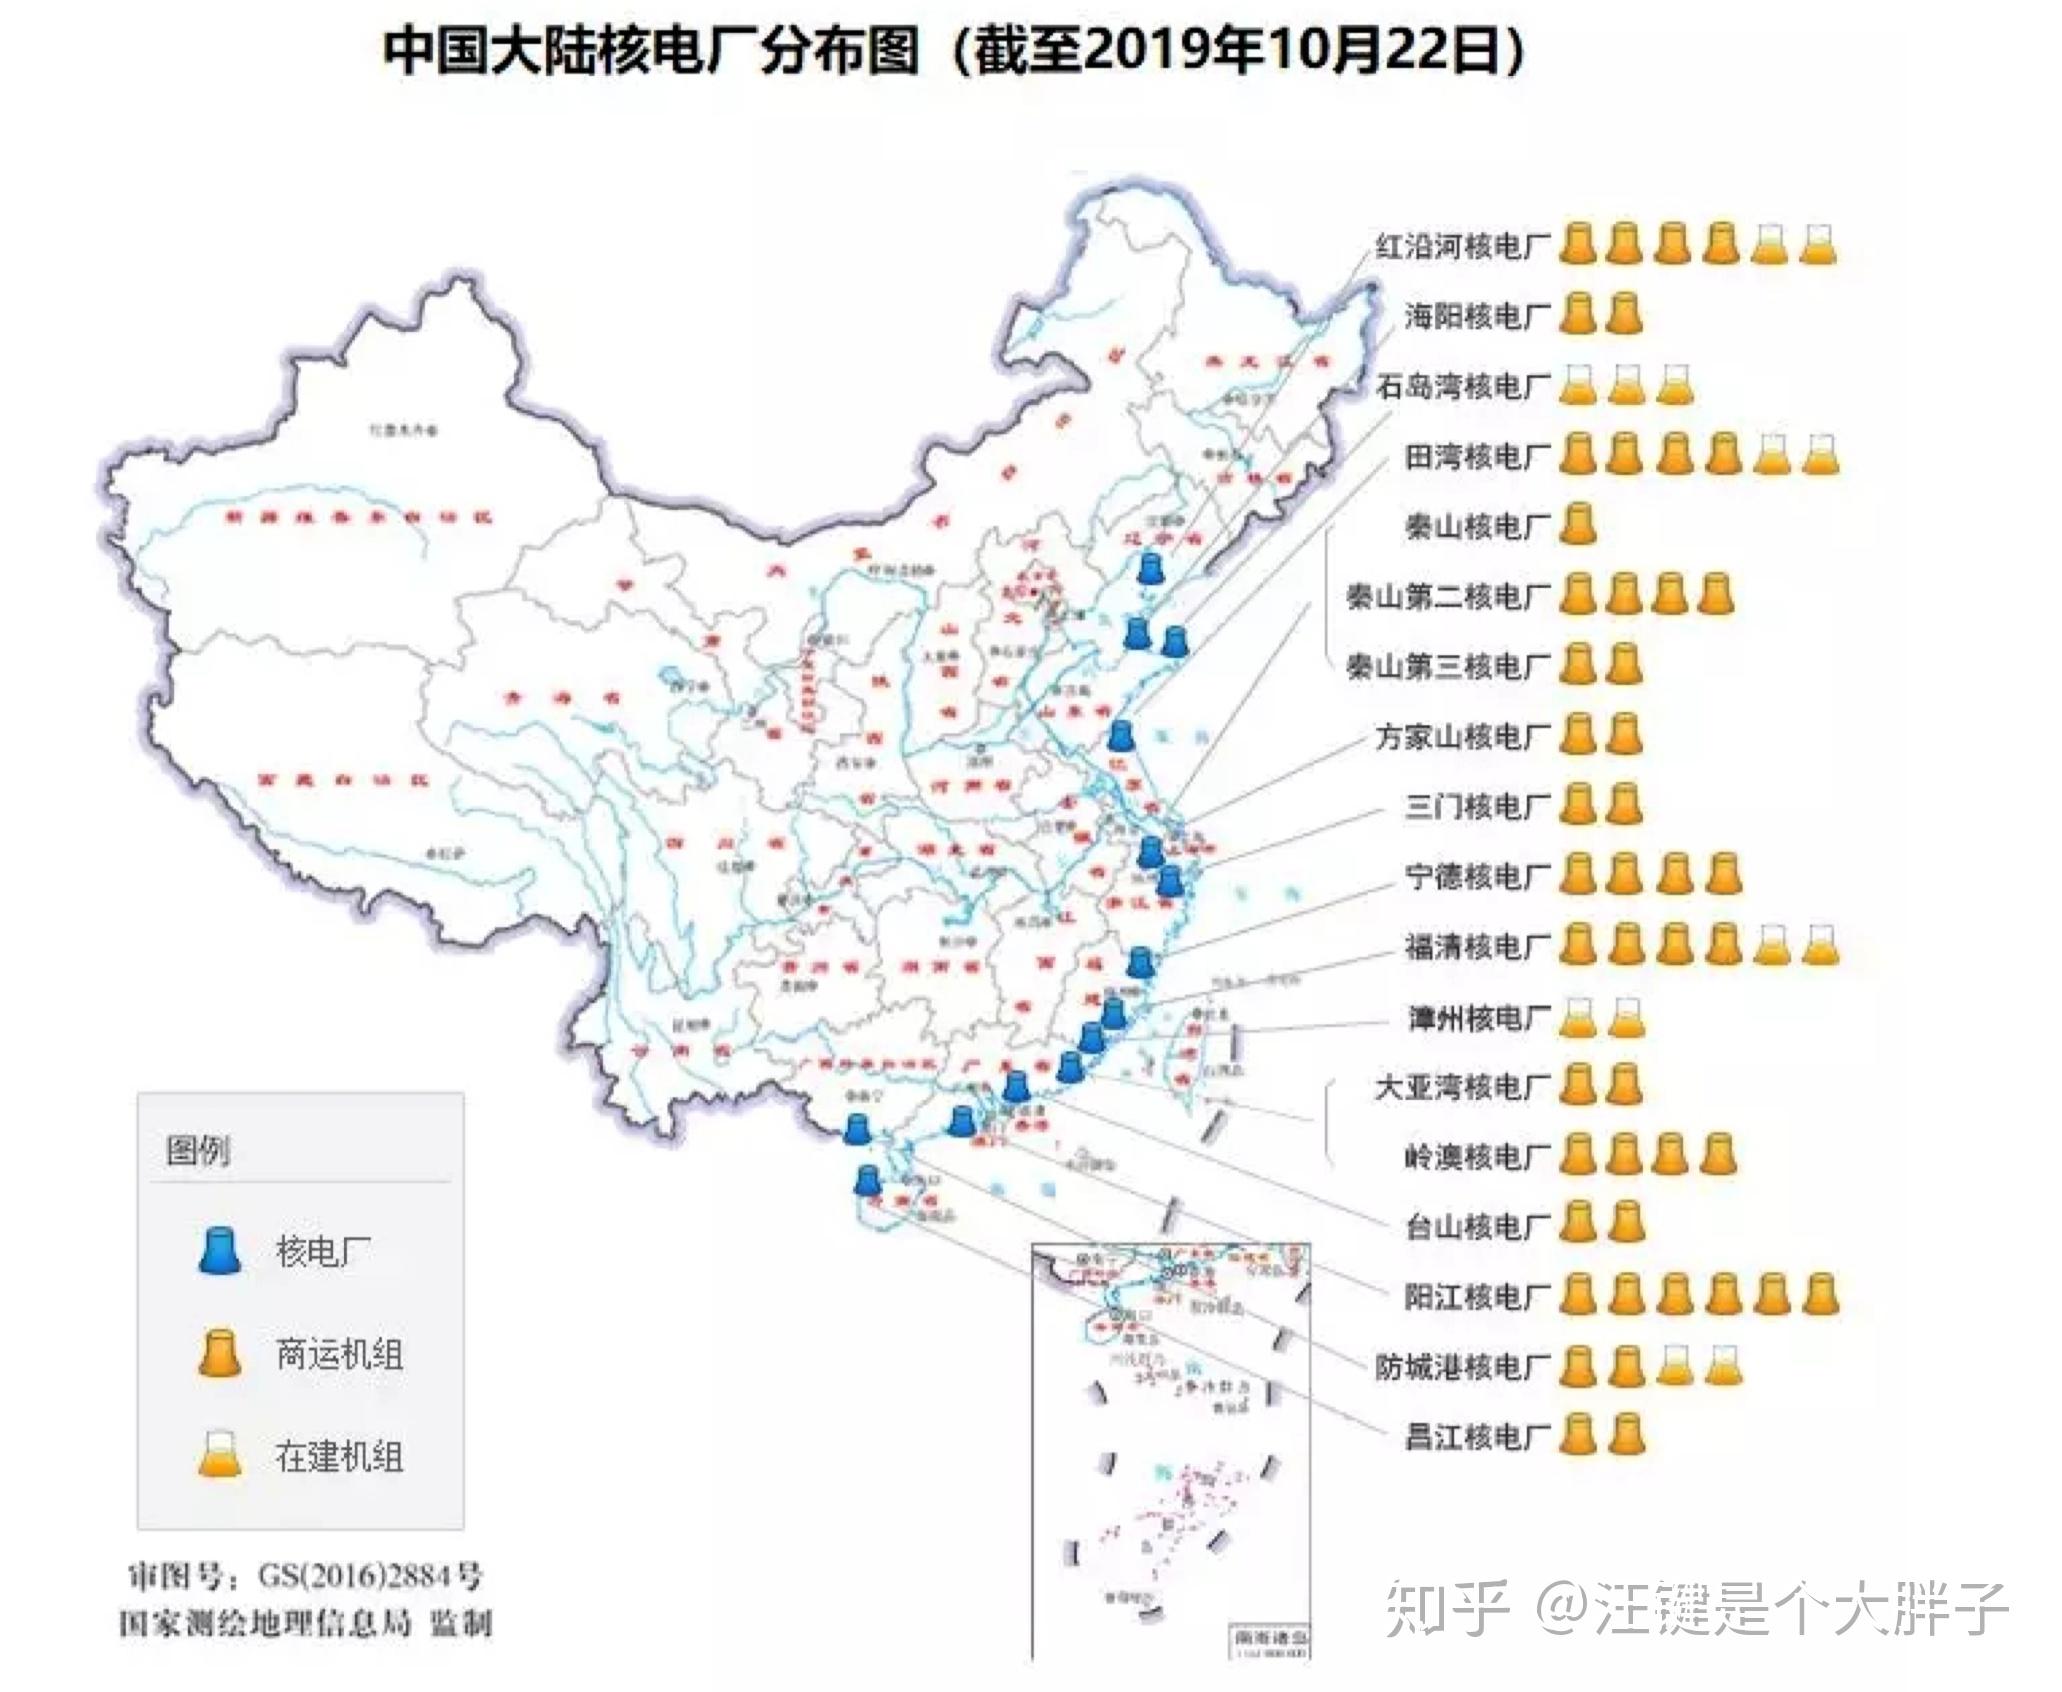 22):今年7月,山东荣成,福建漳州和广东太平岭核电项目获得开工许可,这